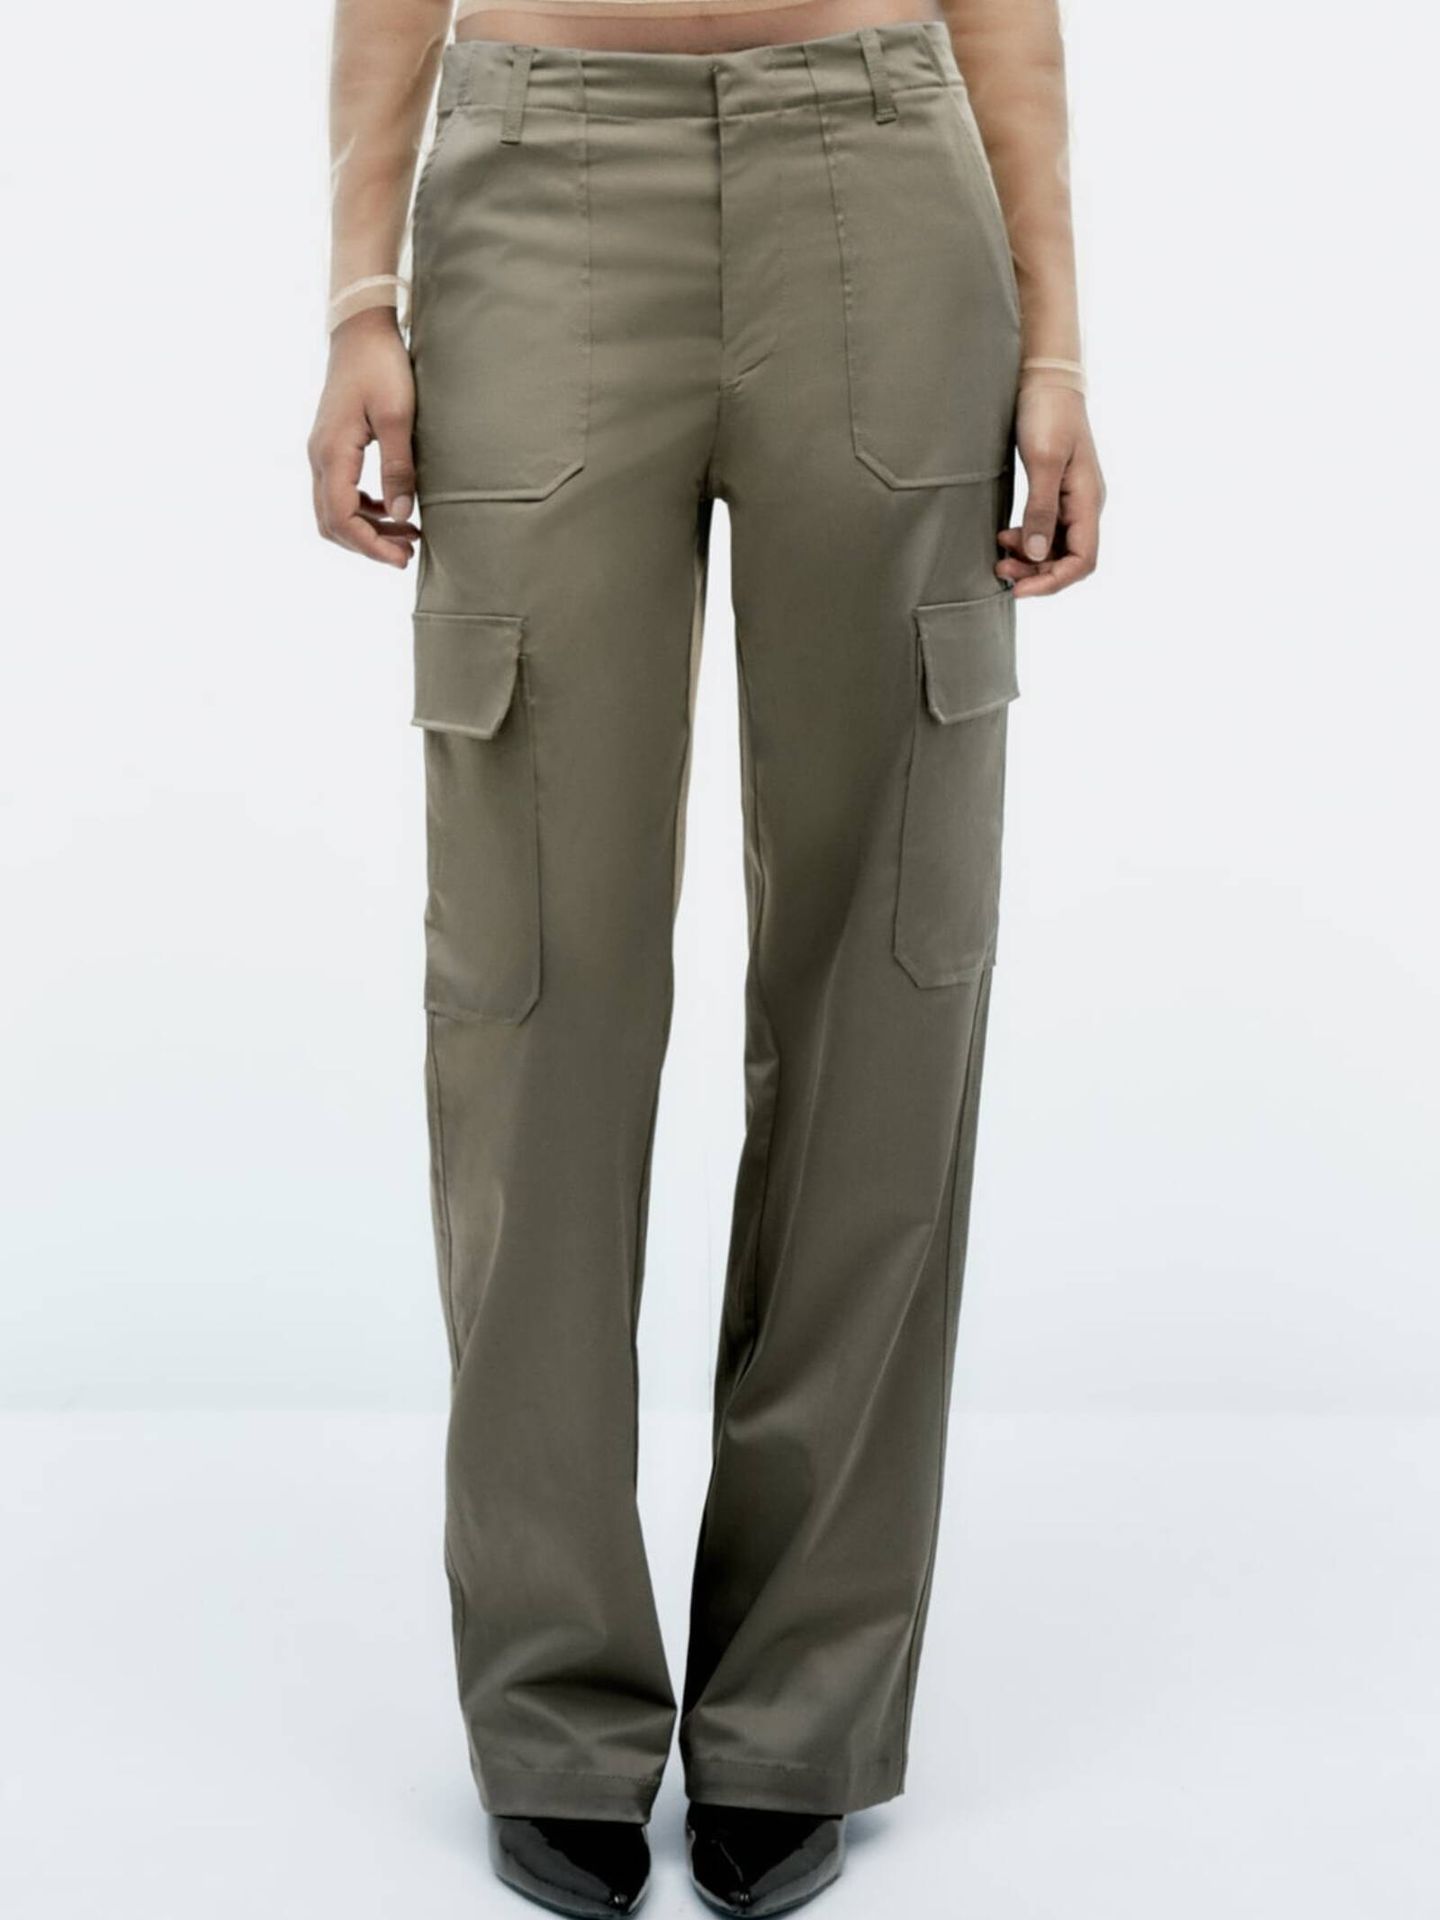 El pantalón cargo de Zara inspirado en los looks más informales de la reina Letizia. (Cortesía)